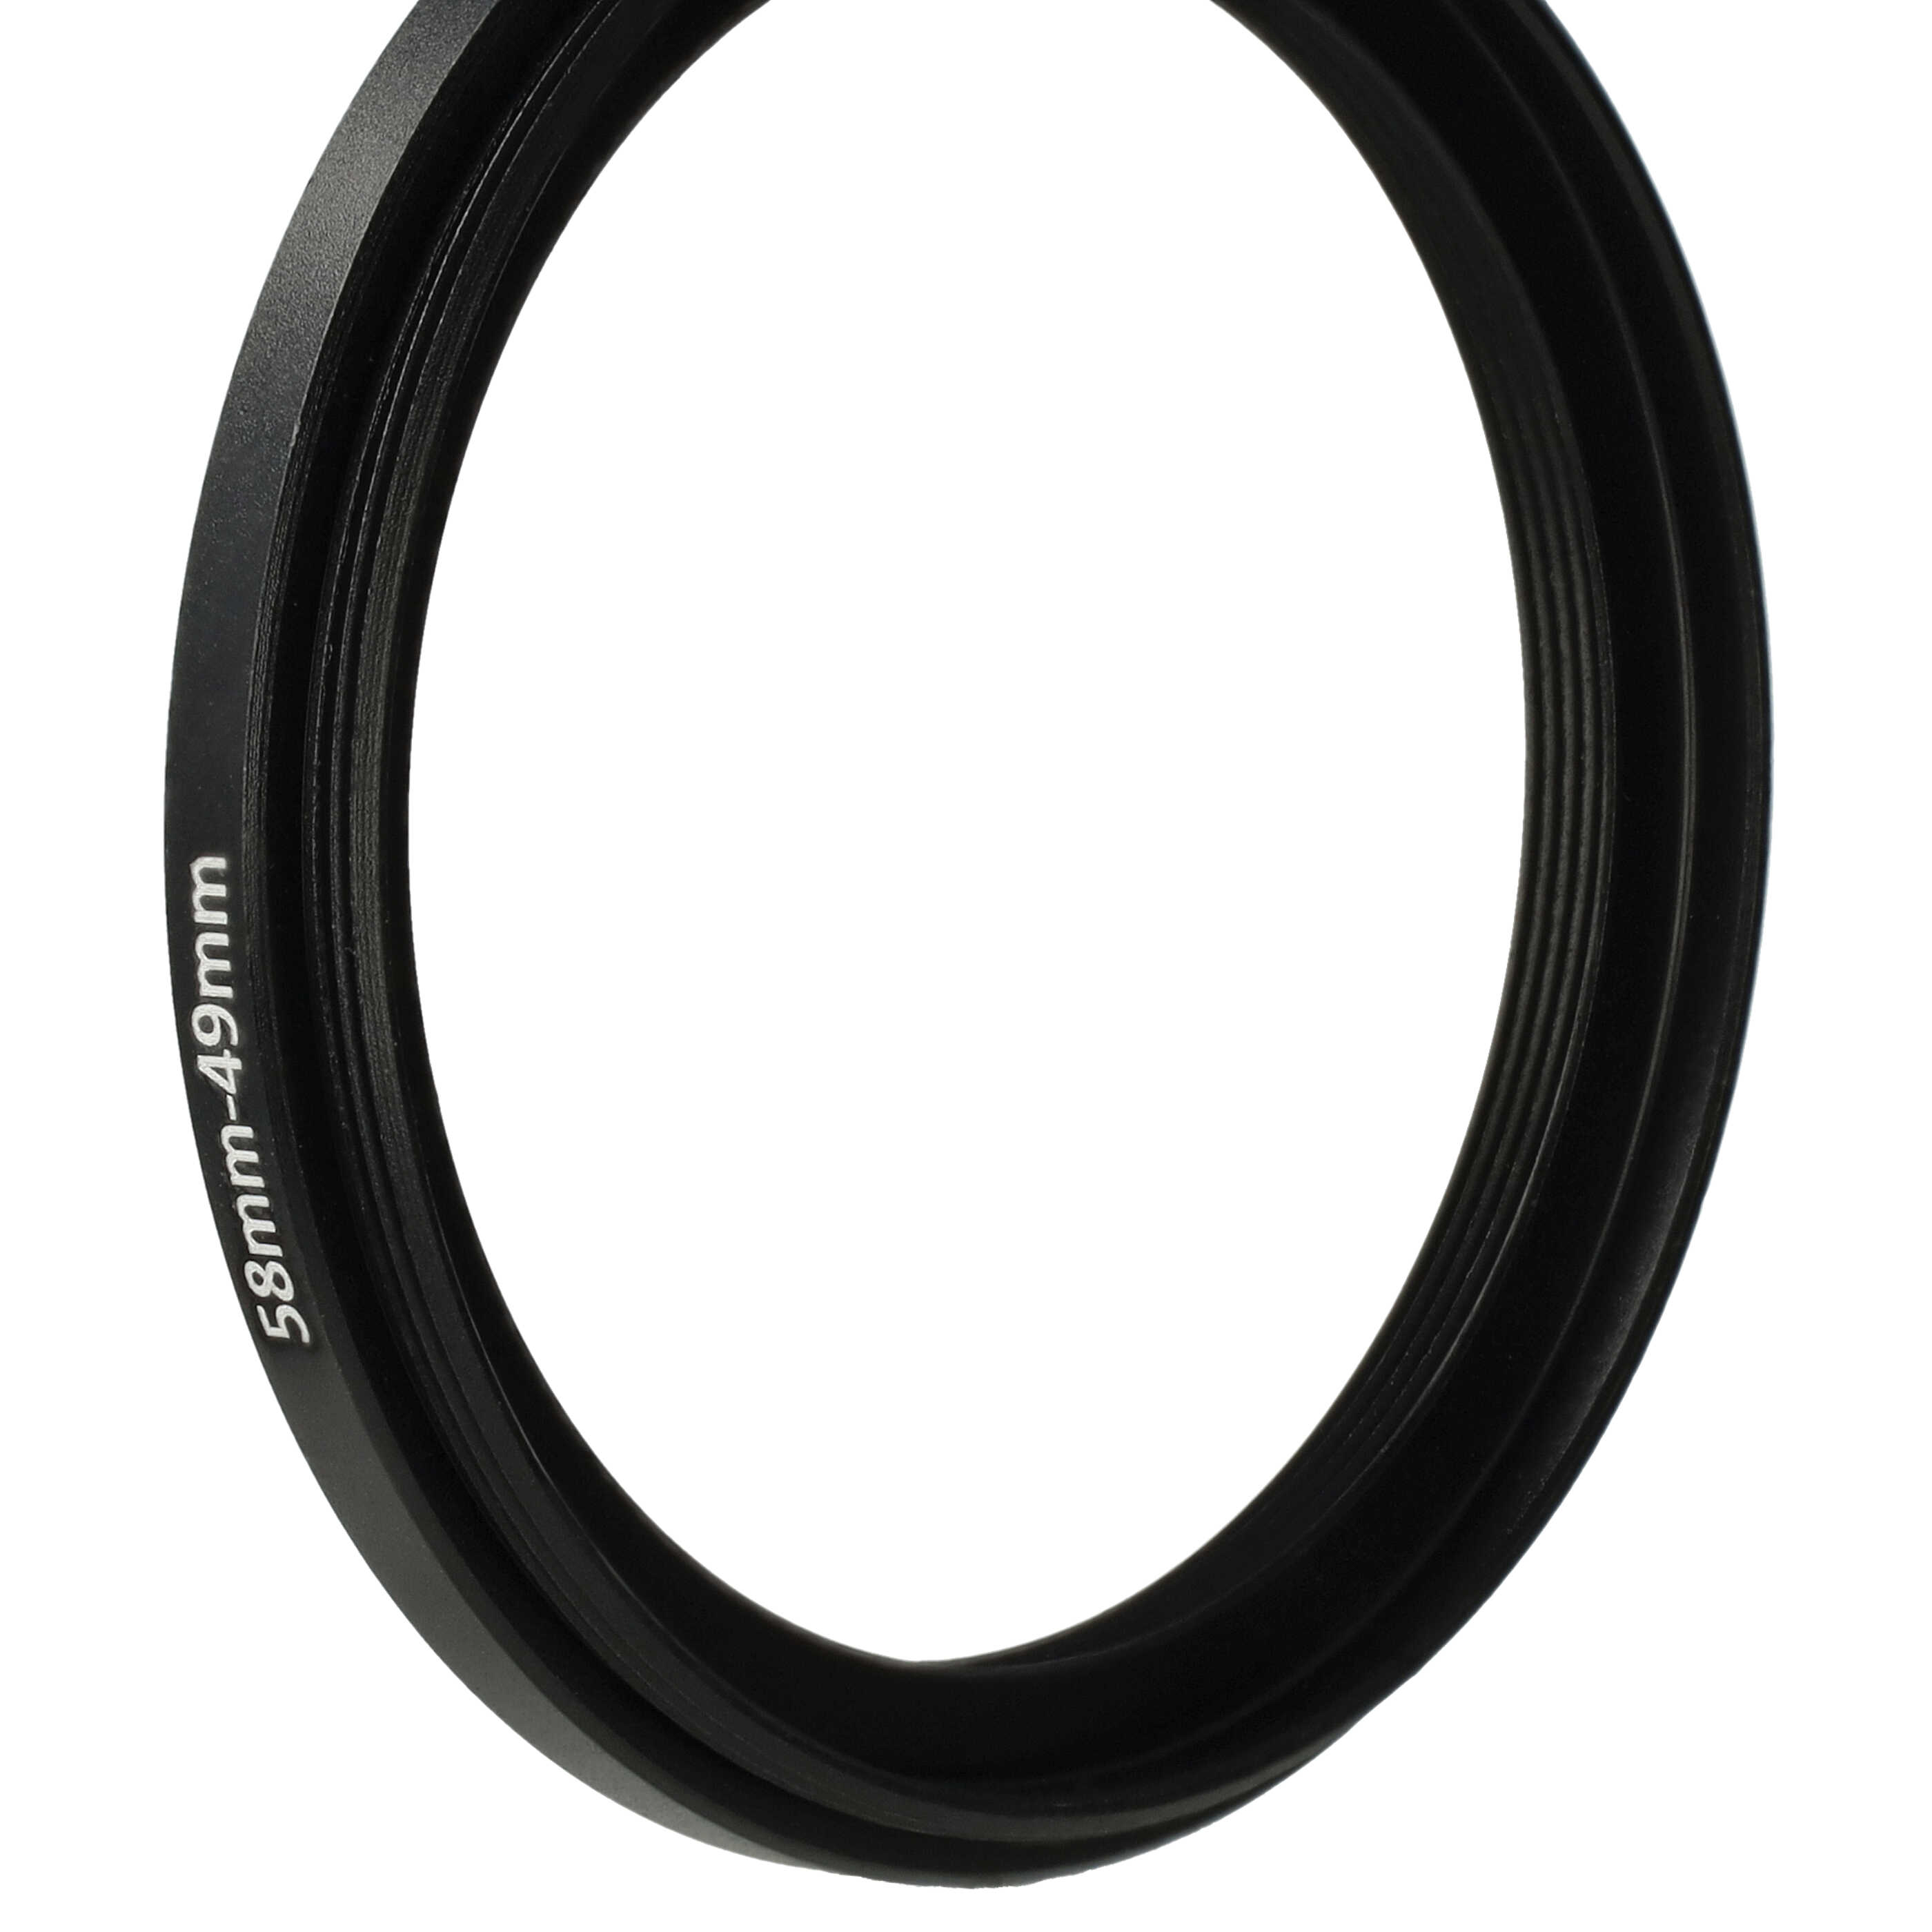 Anello adattatore step-down da 58 mm a 49 mm per obiettivo fotocamera - Adattatore filtro, metallo, nero